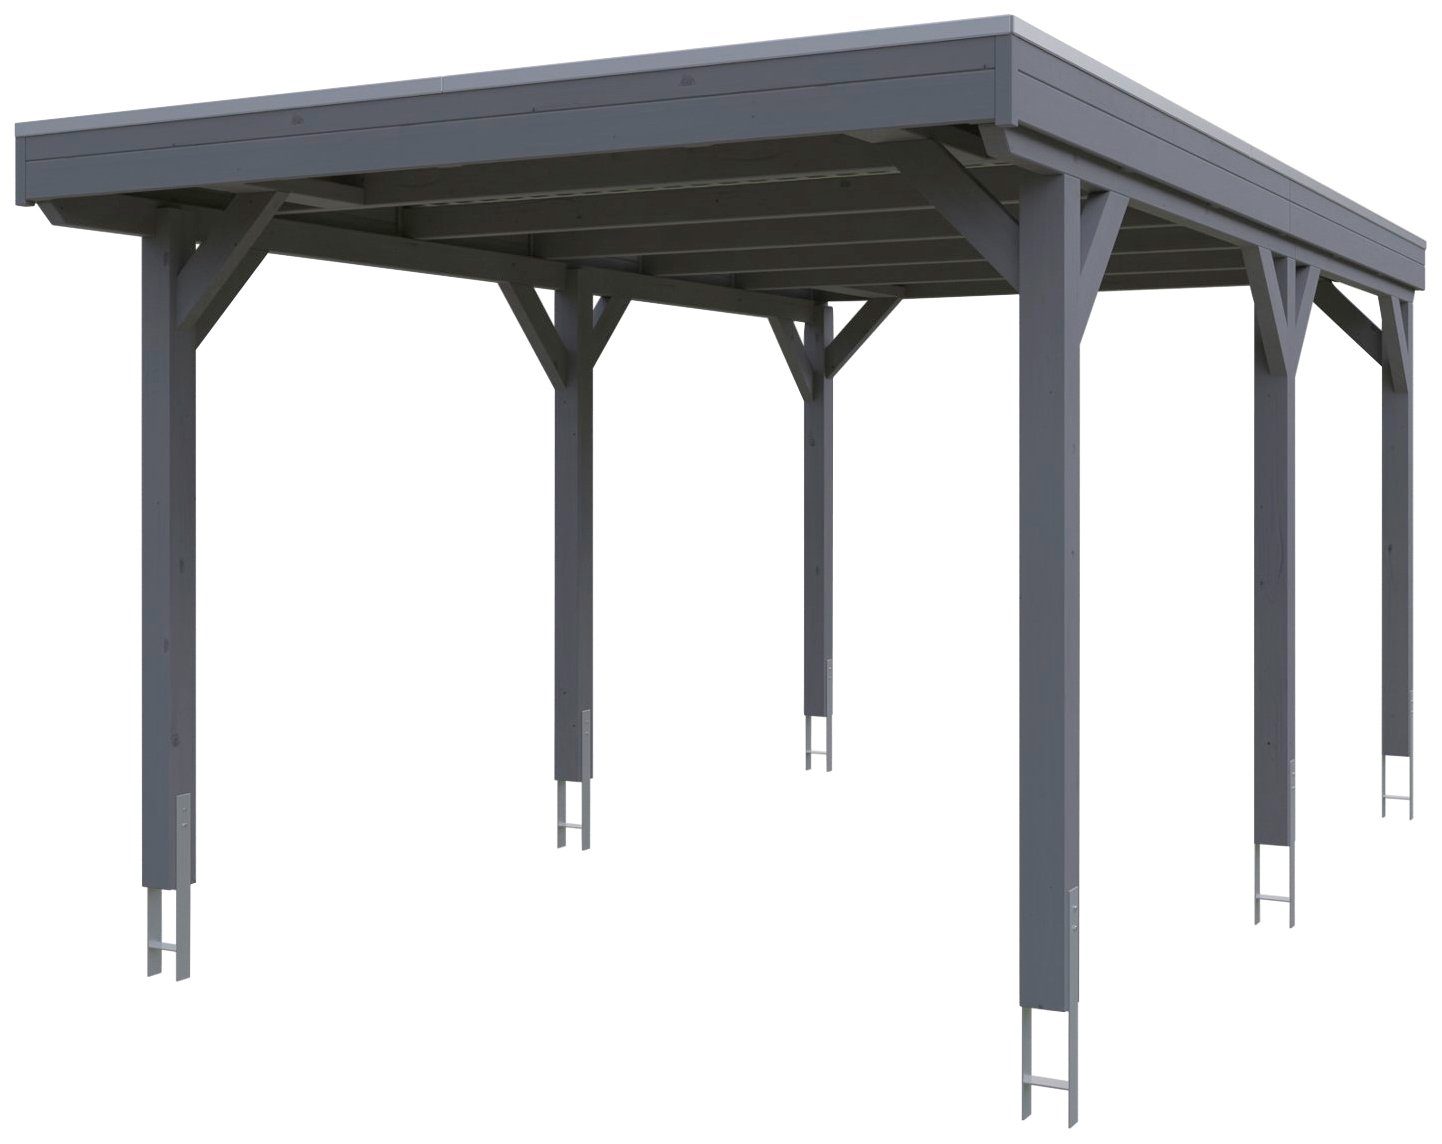 Skanholz Einzelcarport Grunewald, BxT: 321x554 cm, 289 cm Einfahrtshöhe,  mit Aluminiumdach, Flachdach mit Aluminium-Dachplatten, farblich behandelt  in schiefergrau